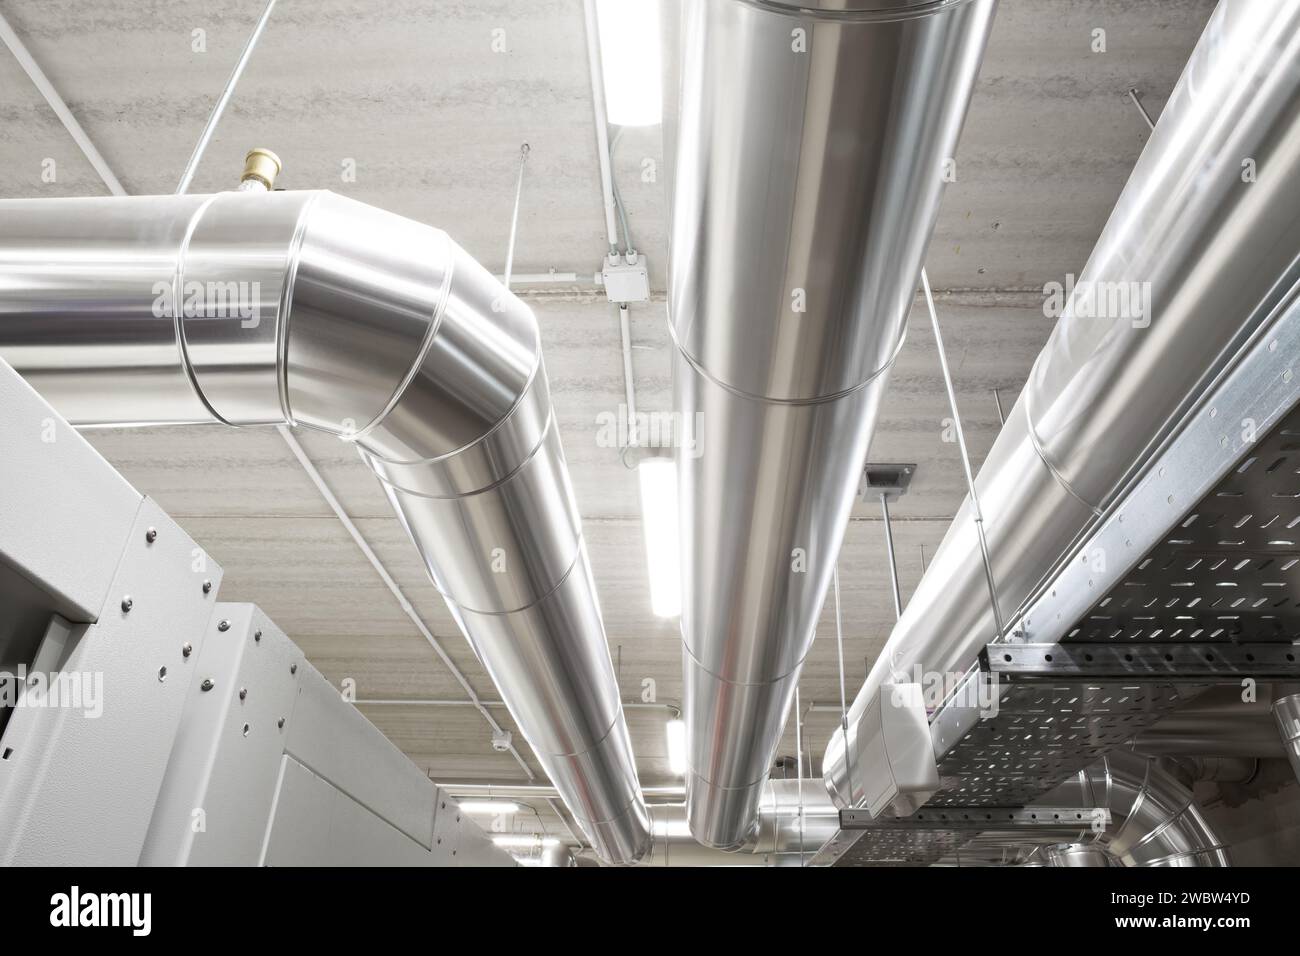 Tuyaux du système HVAC, manutention du chauffage, de la ventilation, de la climatisation et du refroidissement, sont situés au plafond. Ce système de climatisation assure le c Banque D'Images